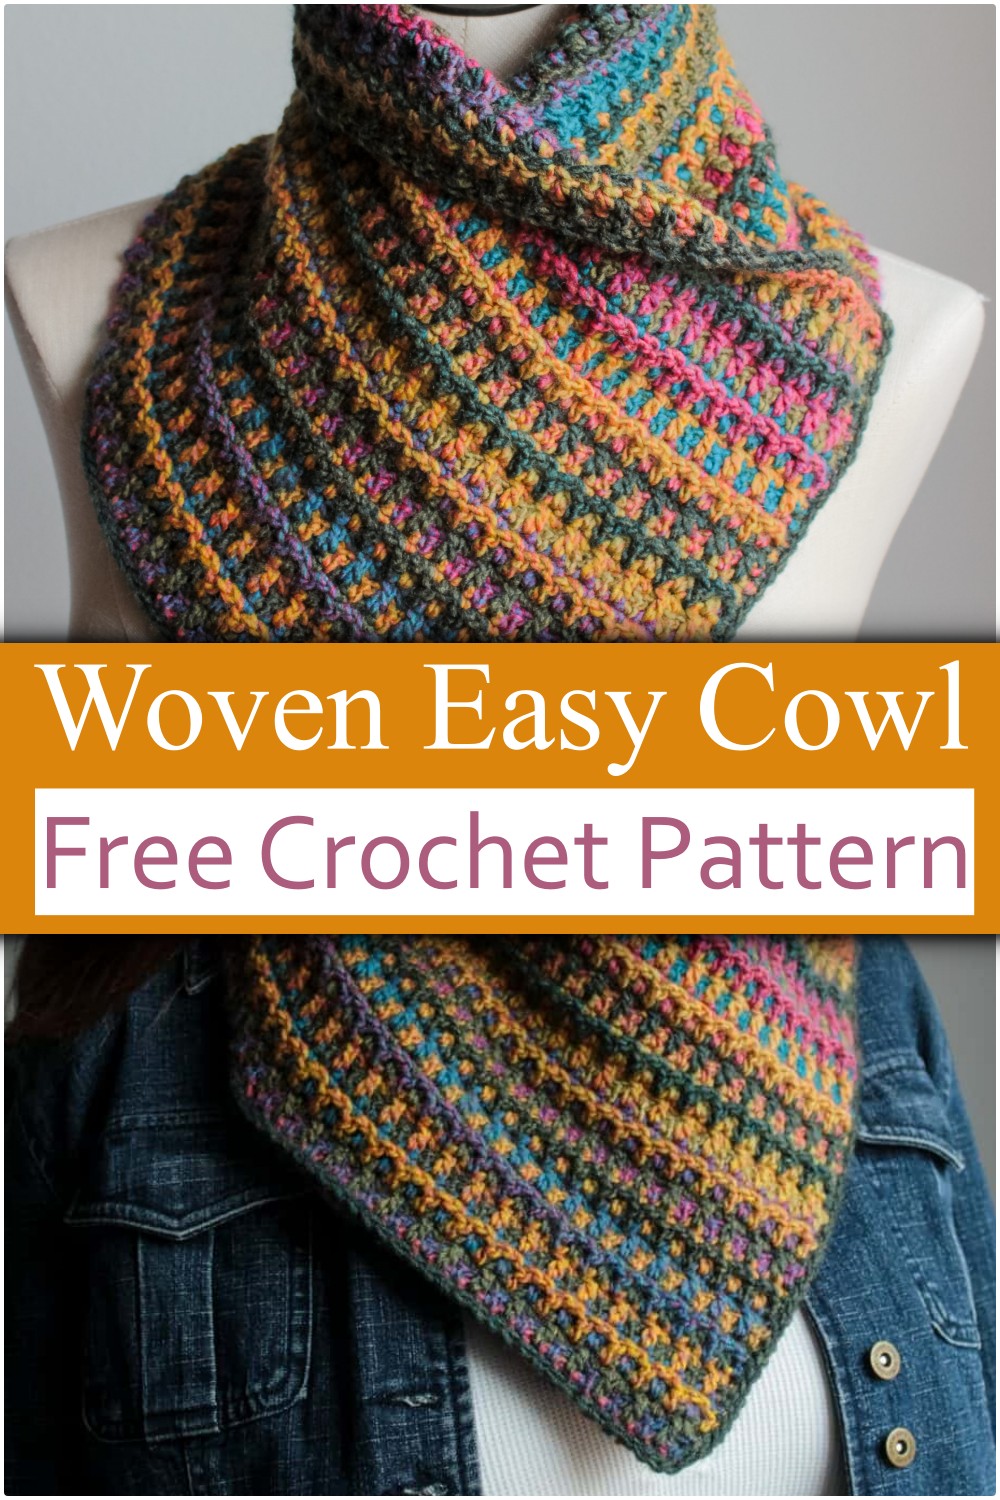 Woven Easy Crochet Cowl Pattern